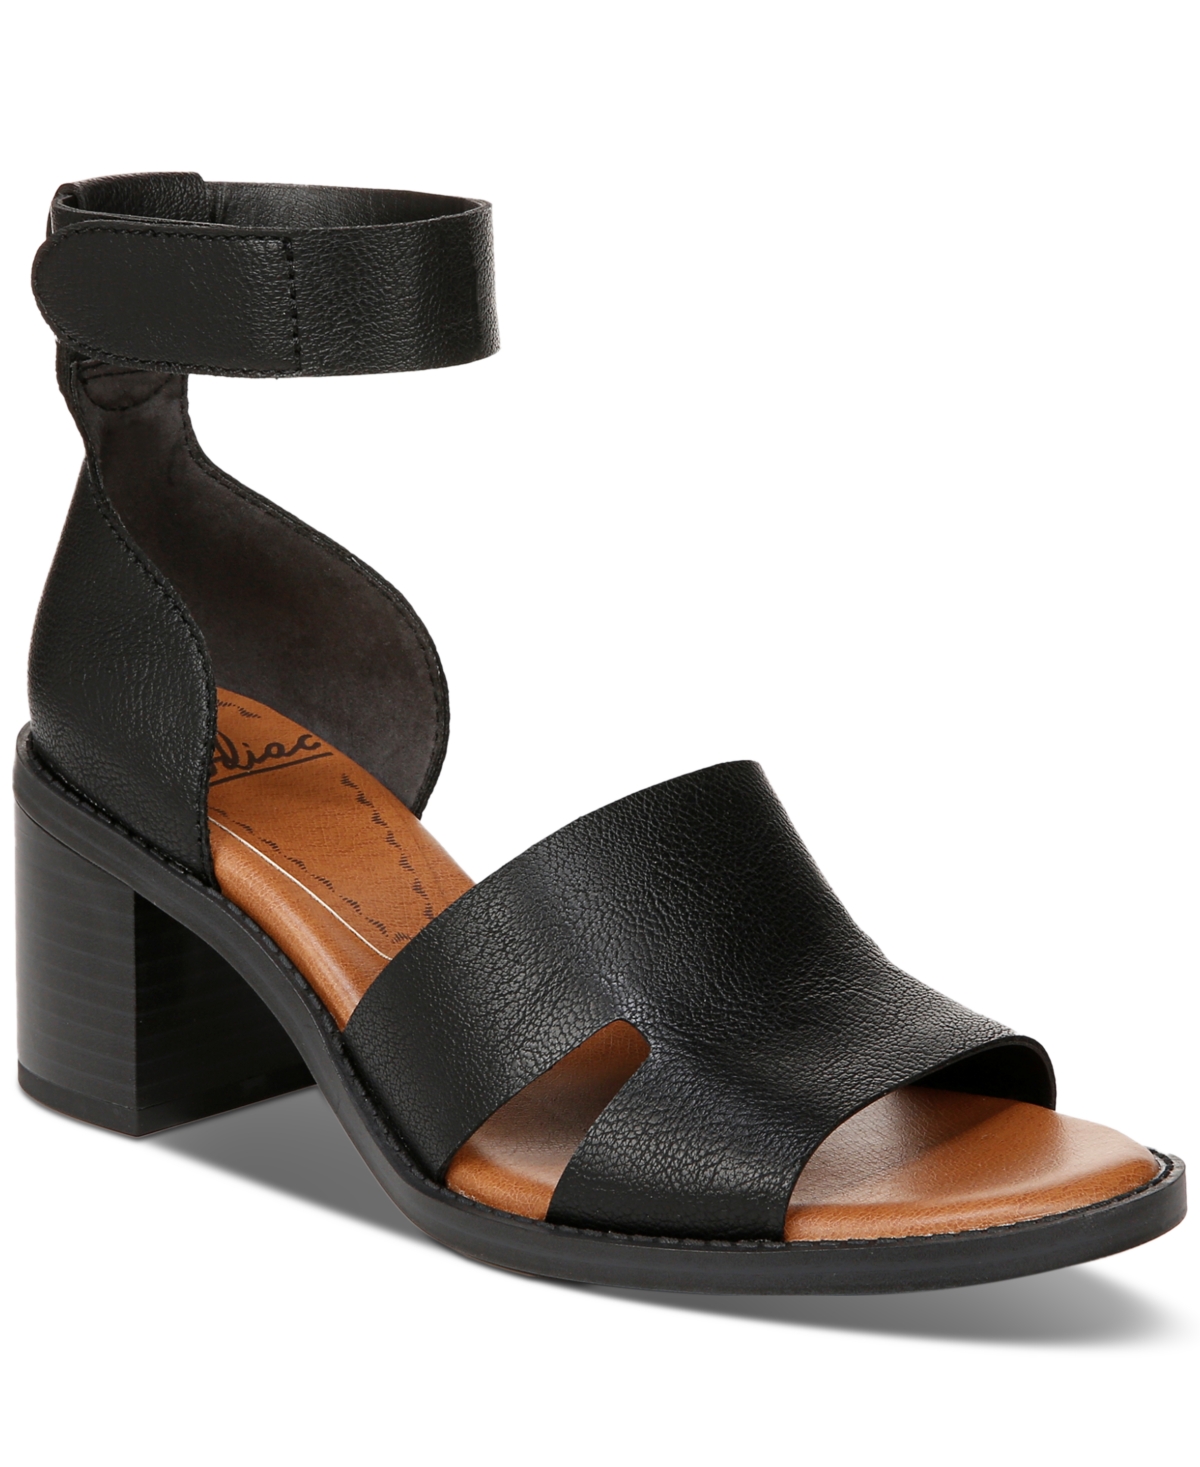 Women's Ida Block-Heel Dress Sandals - Black